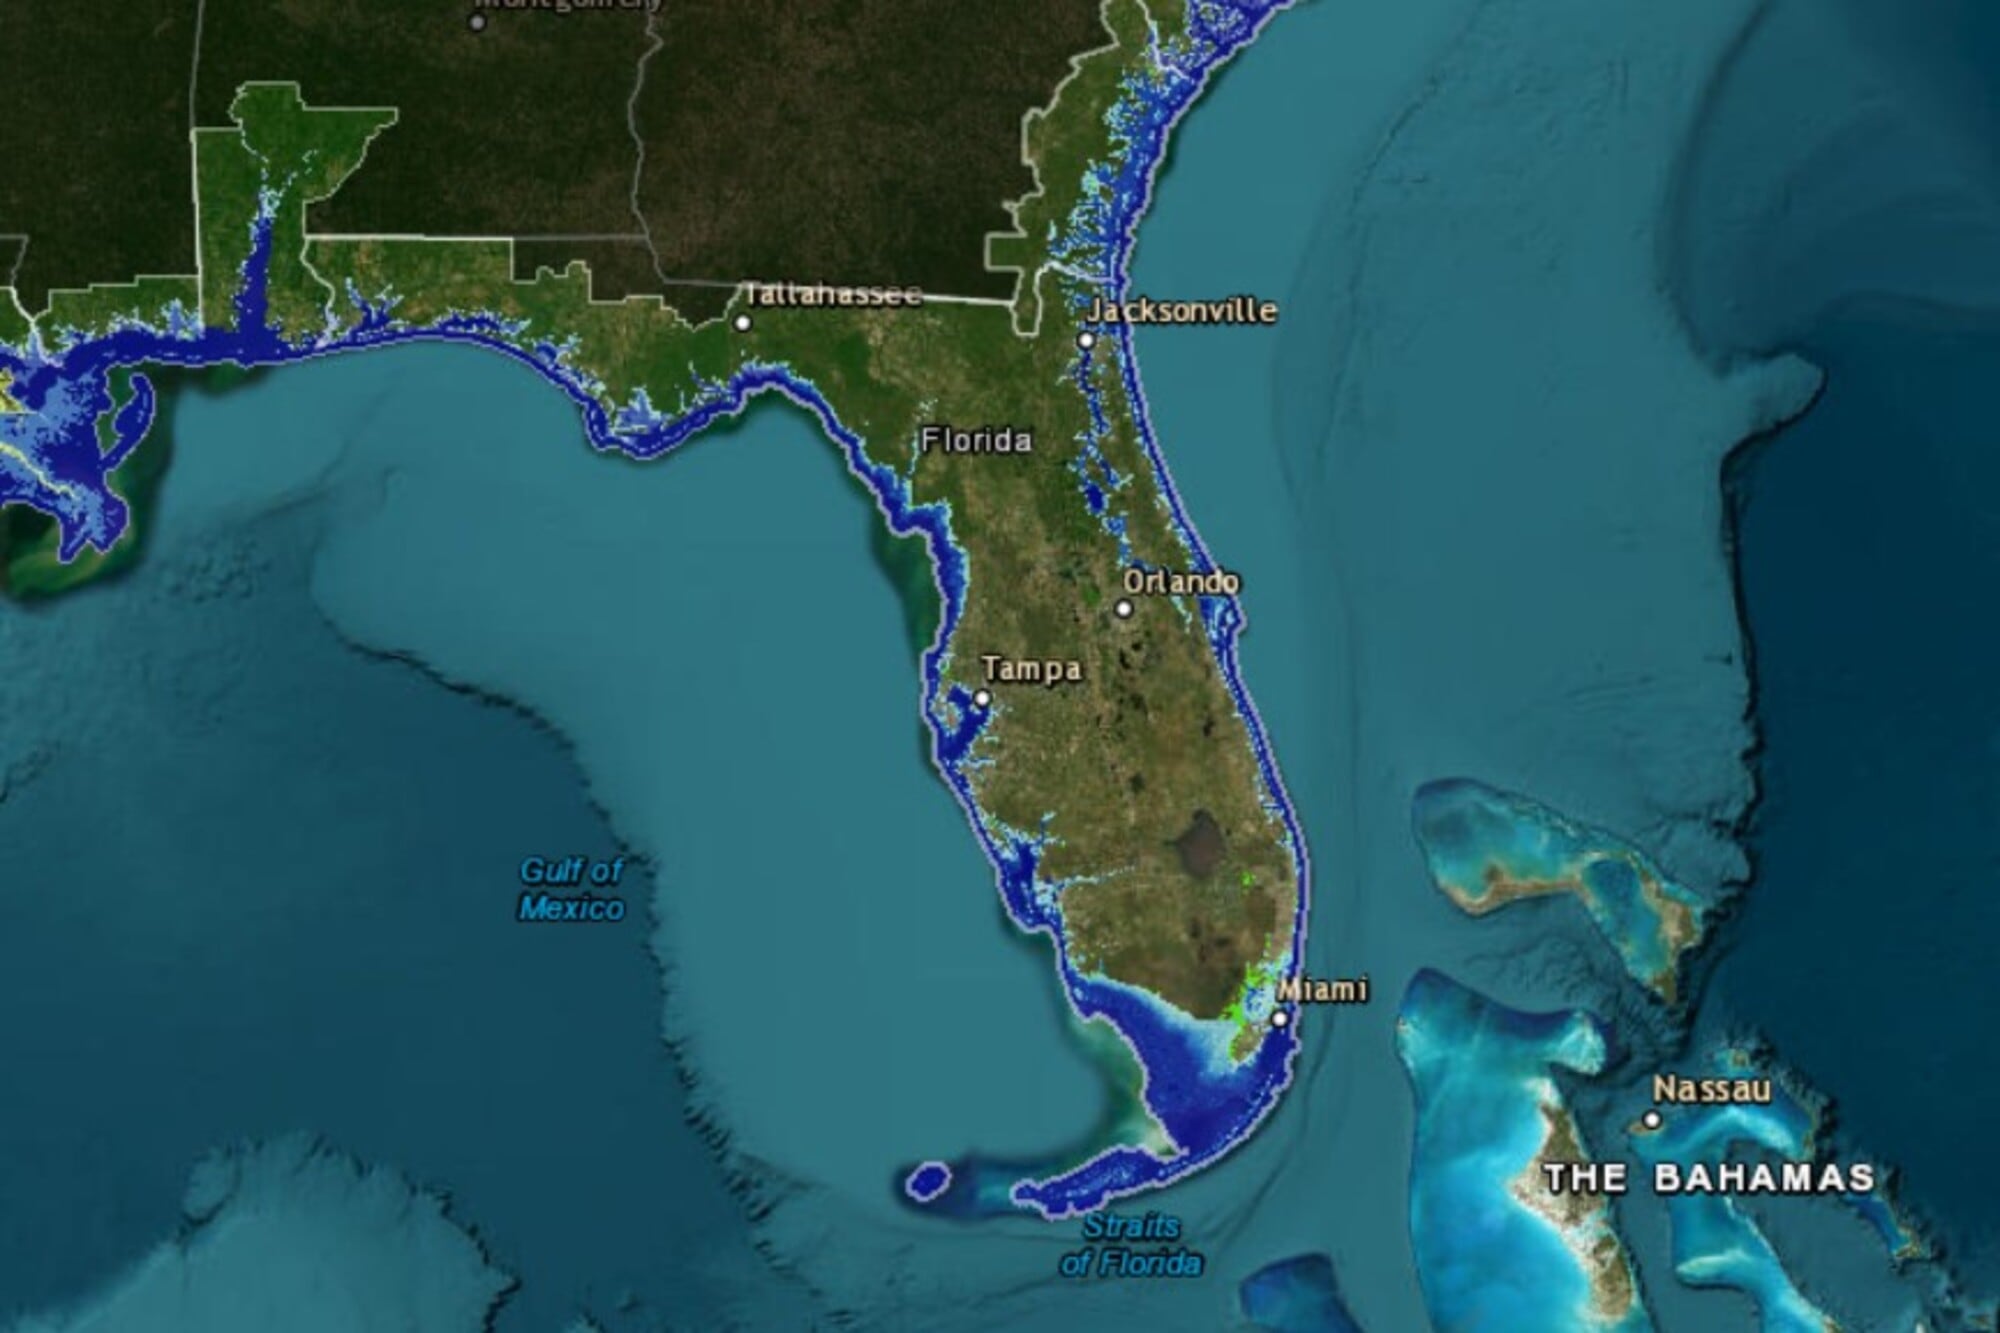 El mapa interactivo de NOAA permite ver cómo afectarían distintas proyecciones de aumento del nivel del mar en las ciudades costeras de Florida